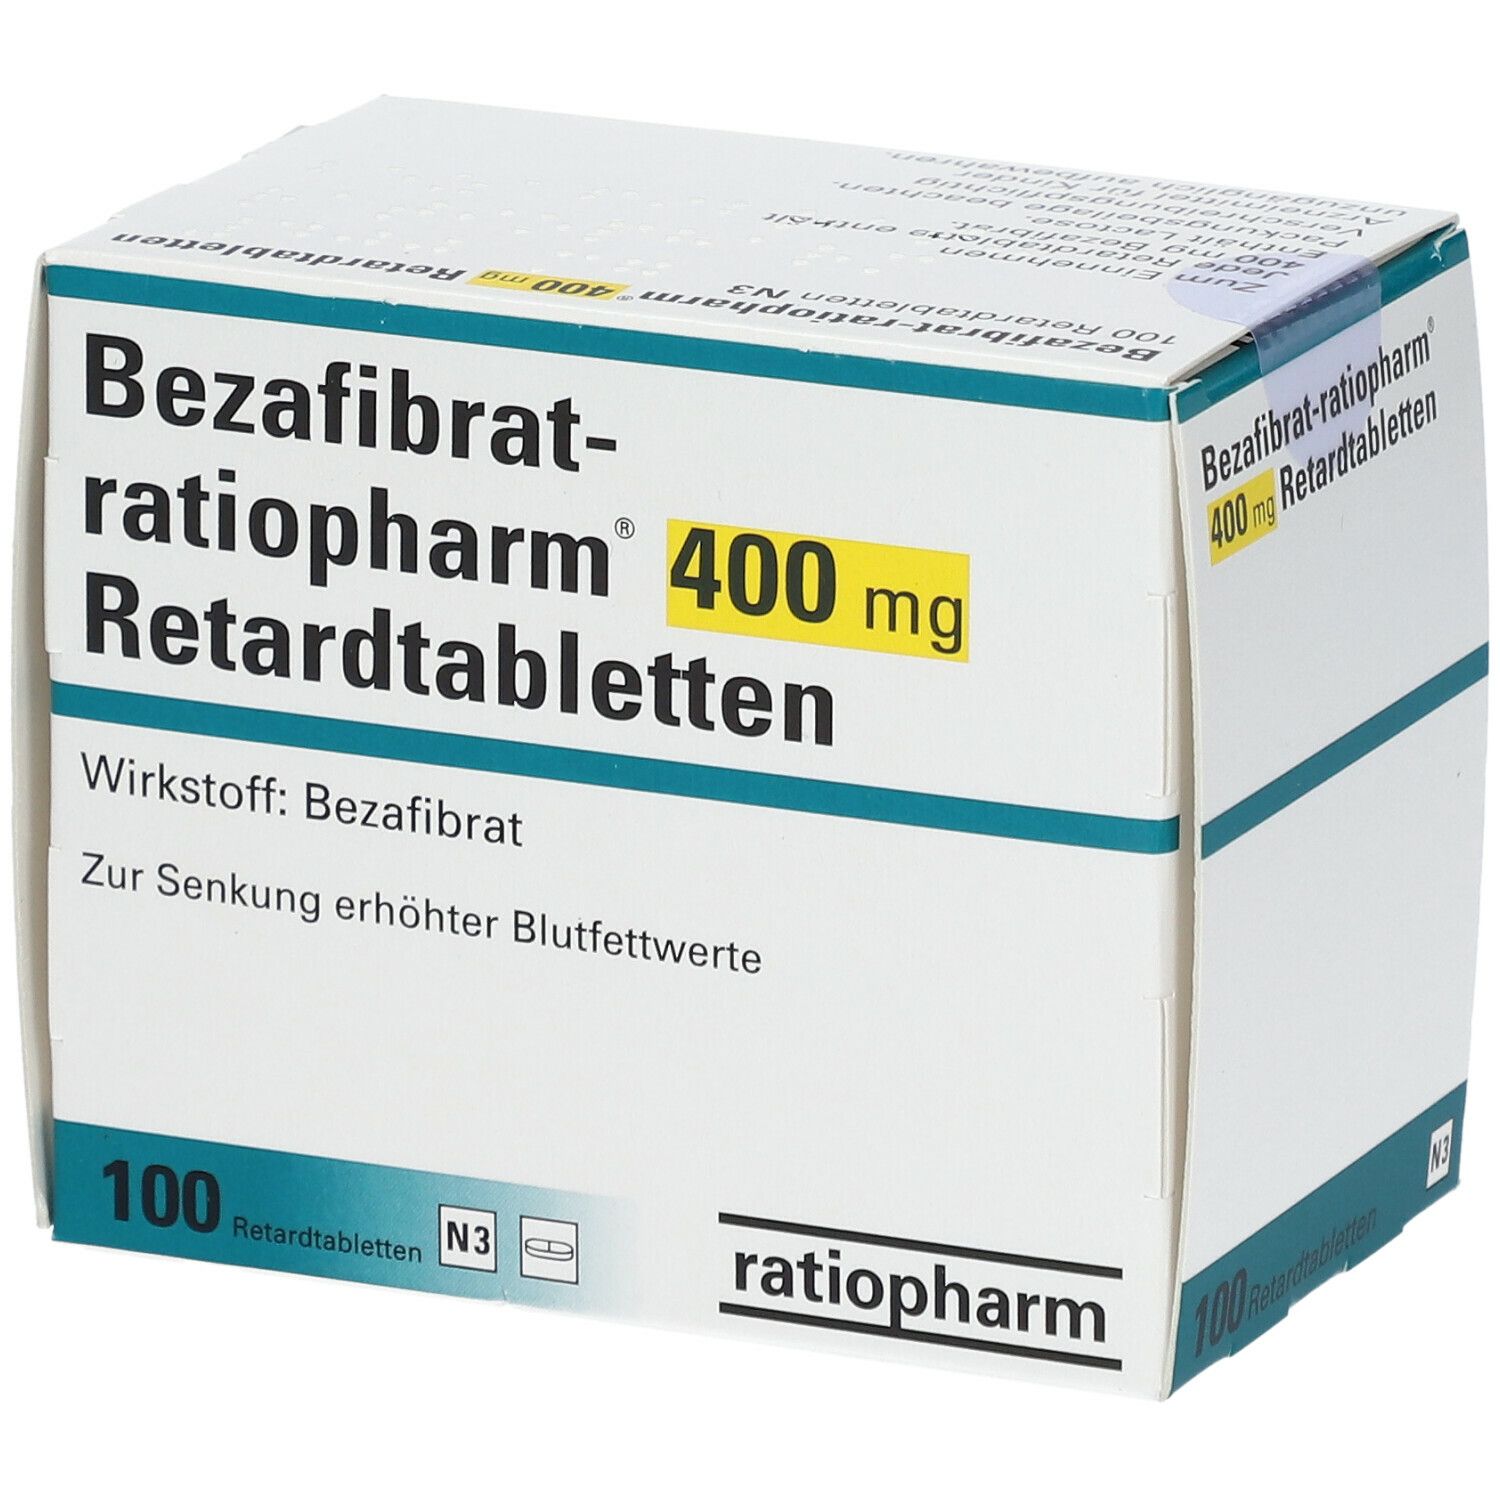 Bezafibrat-ratiopharm® 400 mg